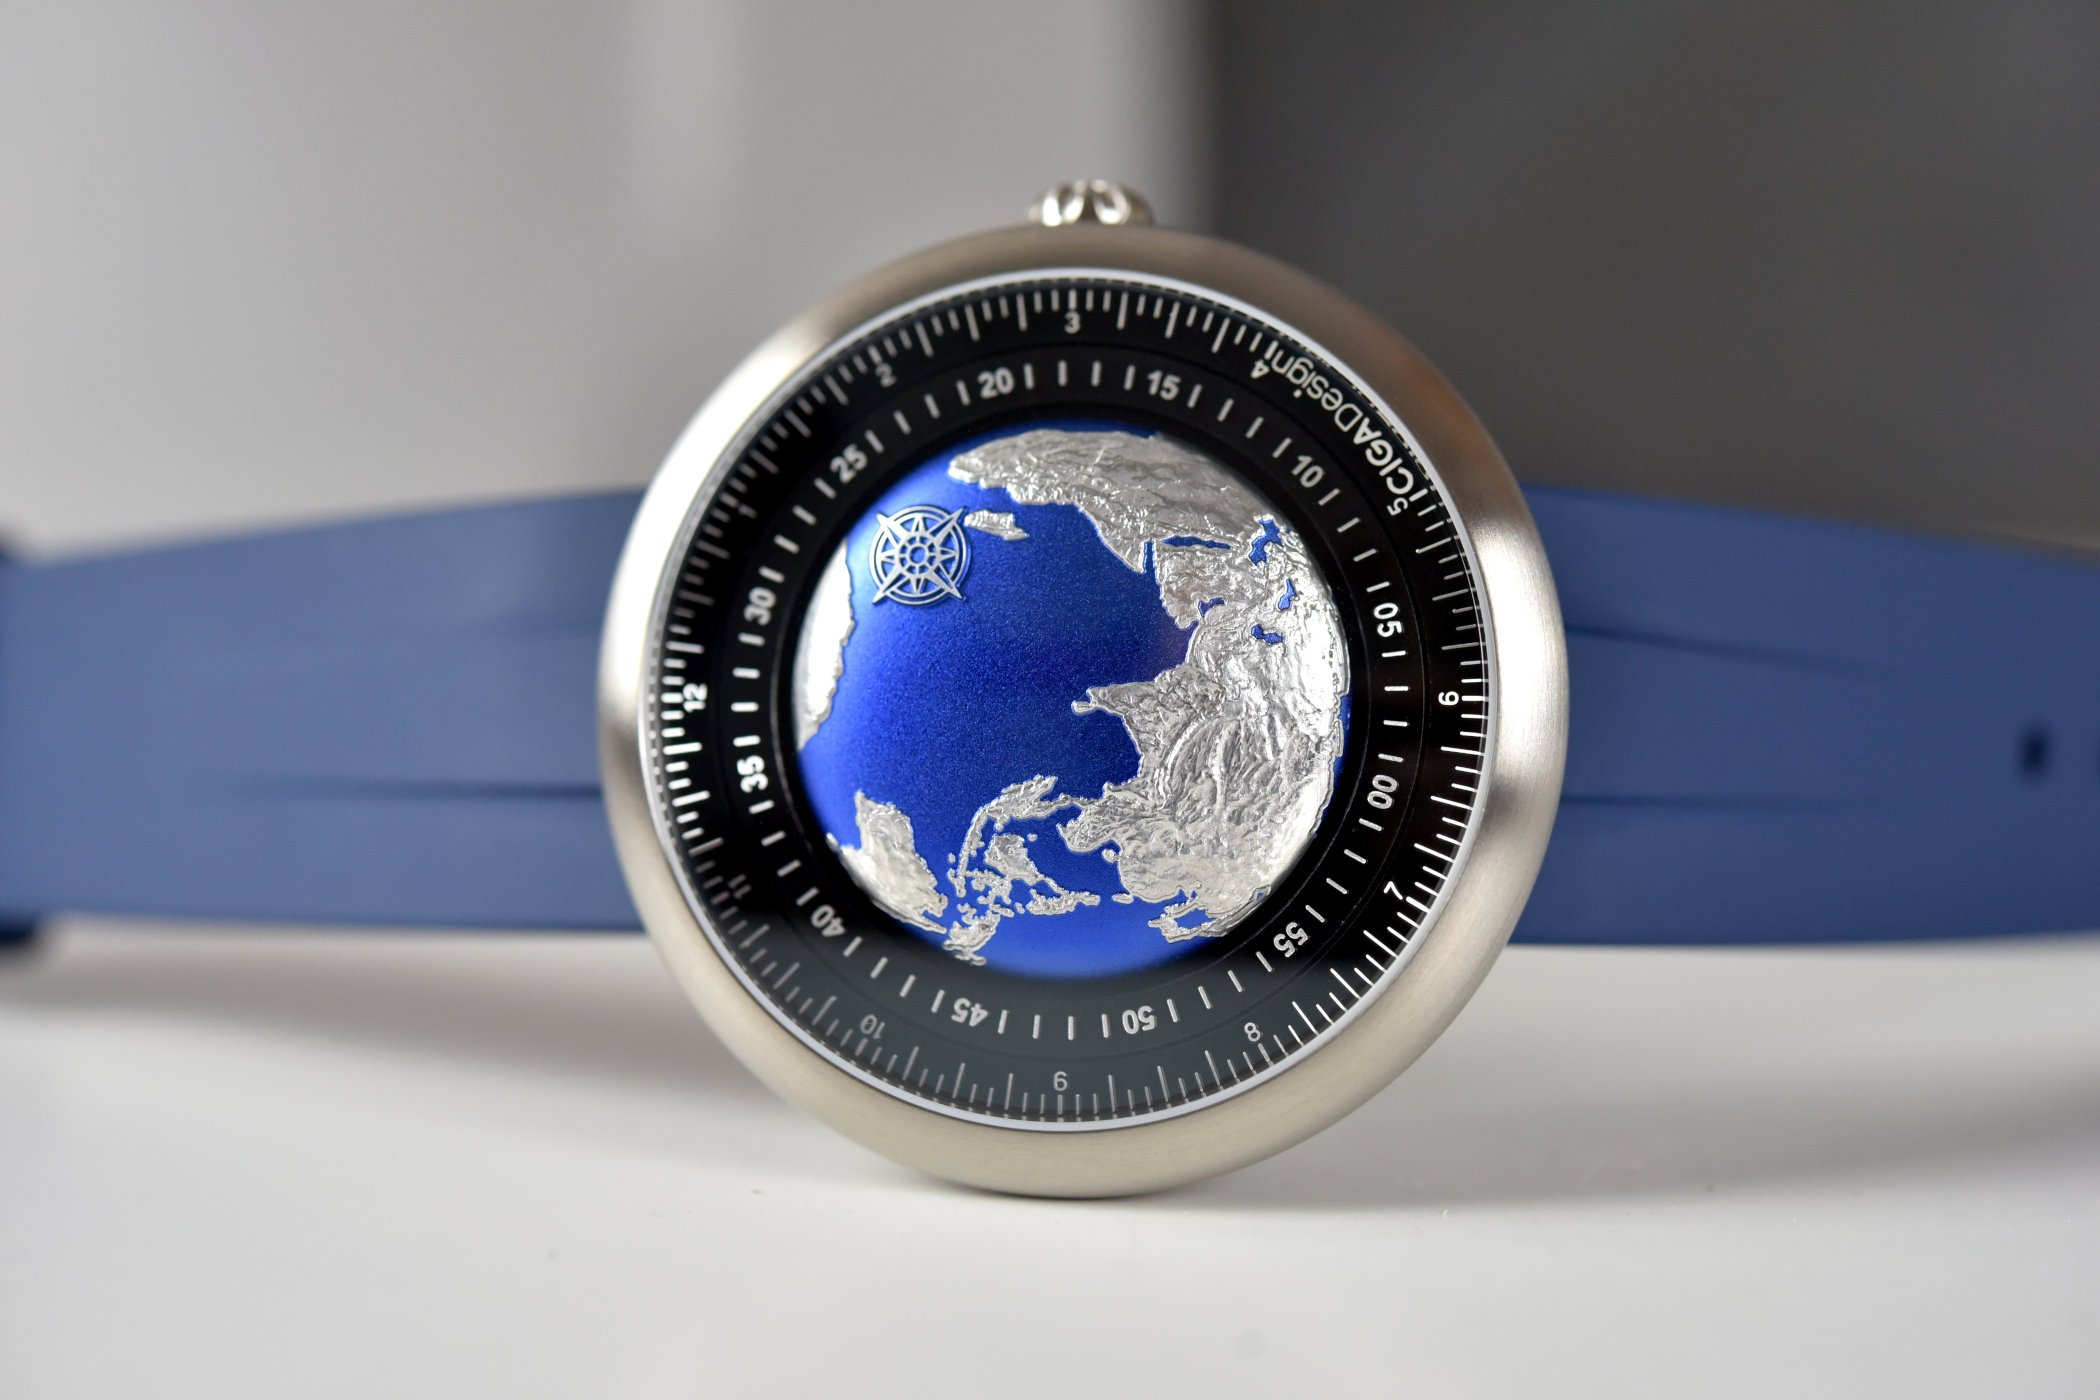 Китайские часы CIGA Design Blue Planet Titanium отмечены наградами GPHG.